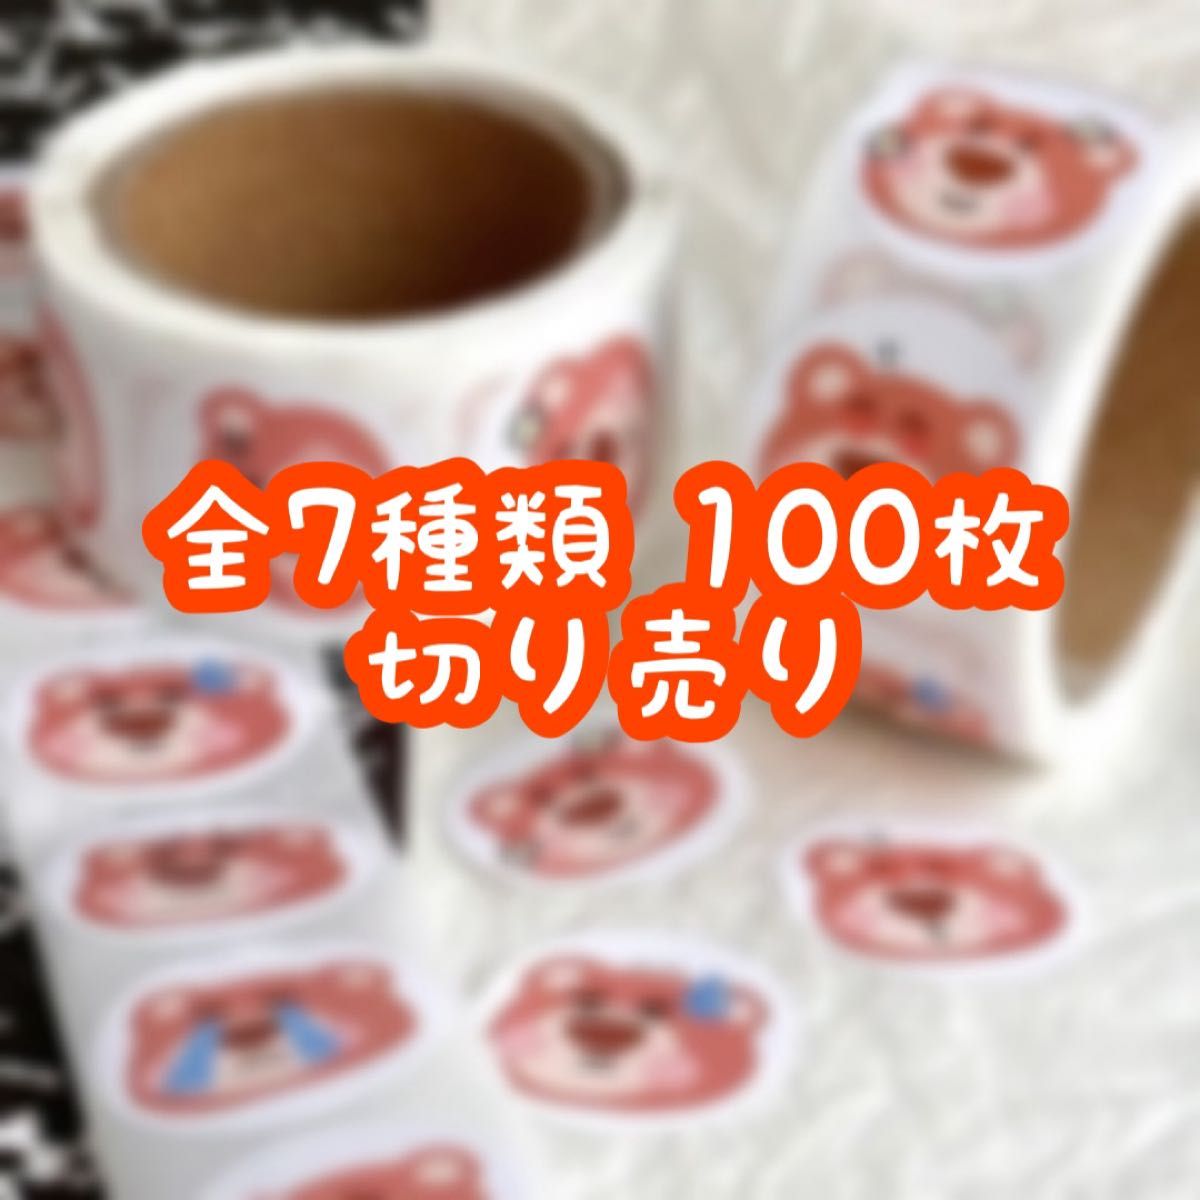 ロールシール 切り売り 100枚 ロッツォ No.60